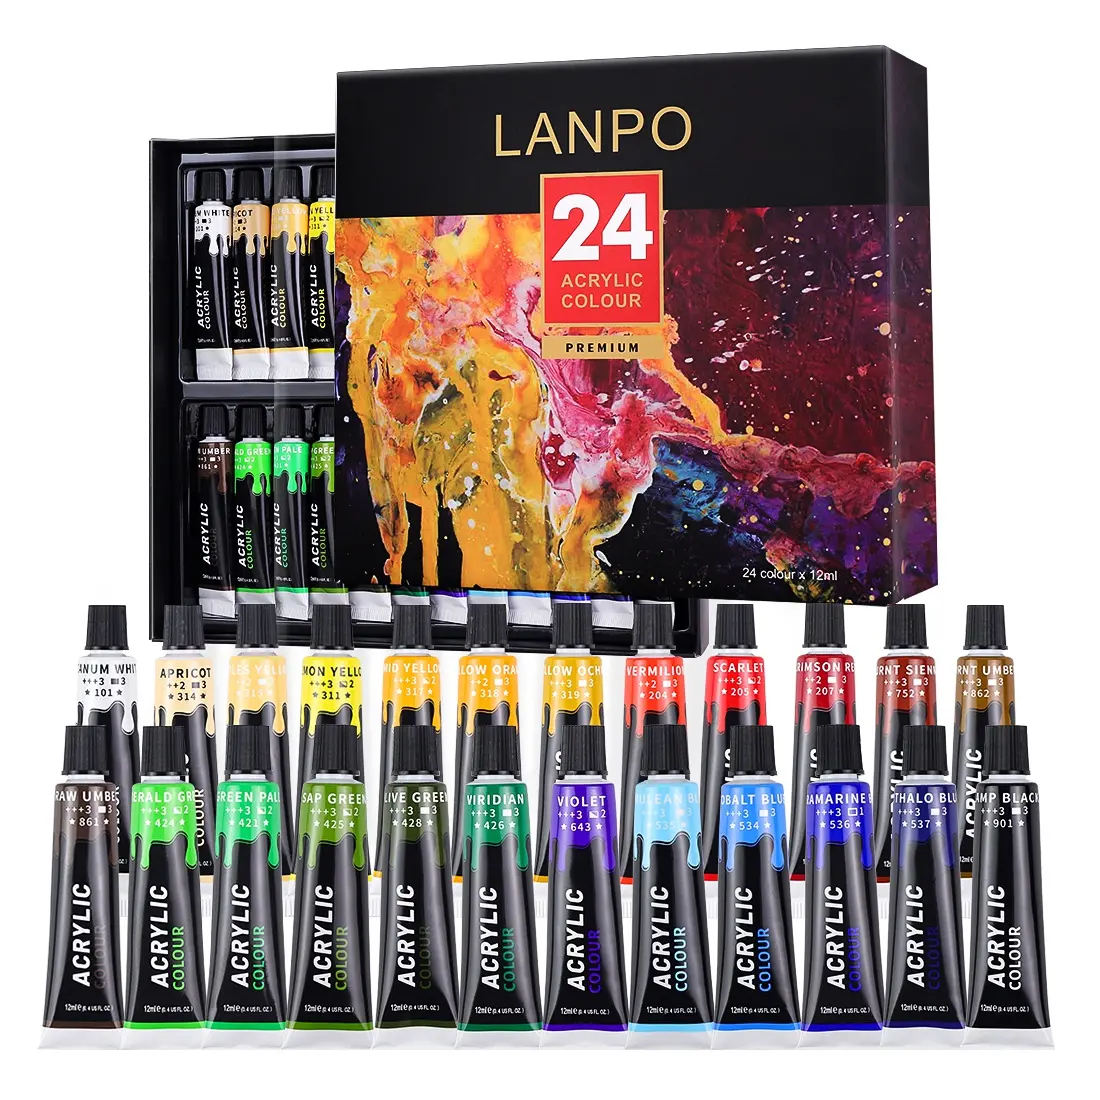 Lanpo Премиум 24 цвета набор акриловых красок студенческий качественный набор акриловых красок для рекламного подарочного набора